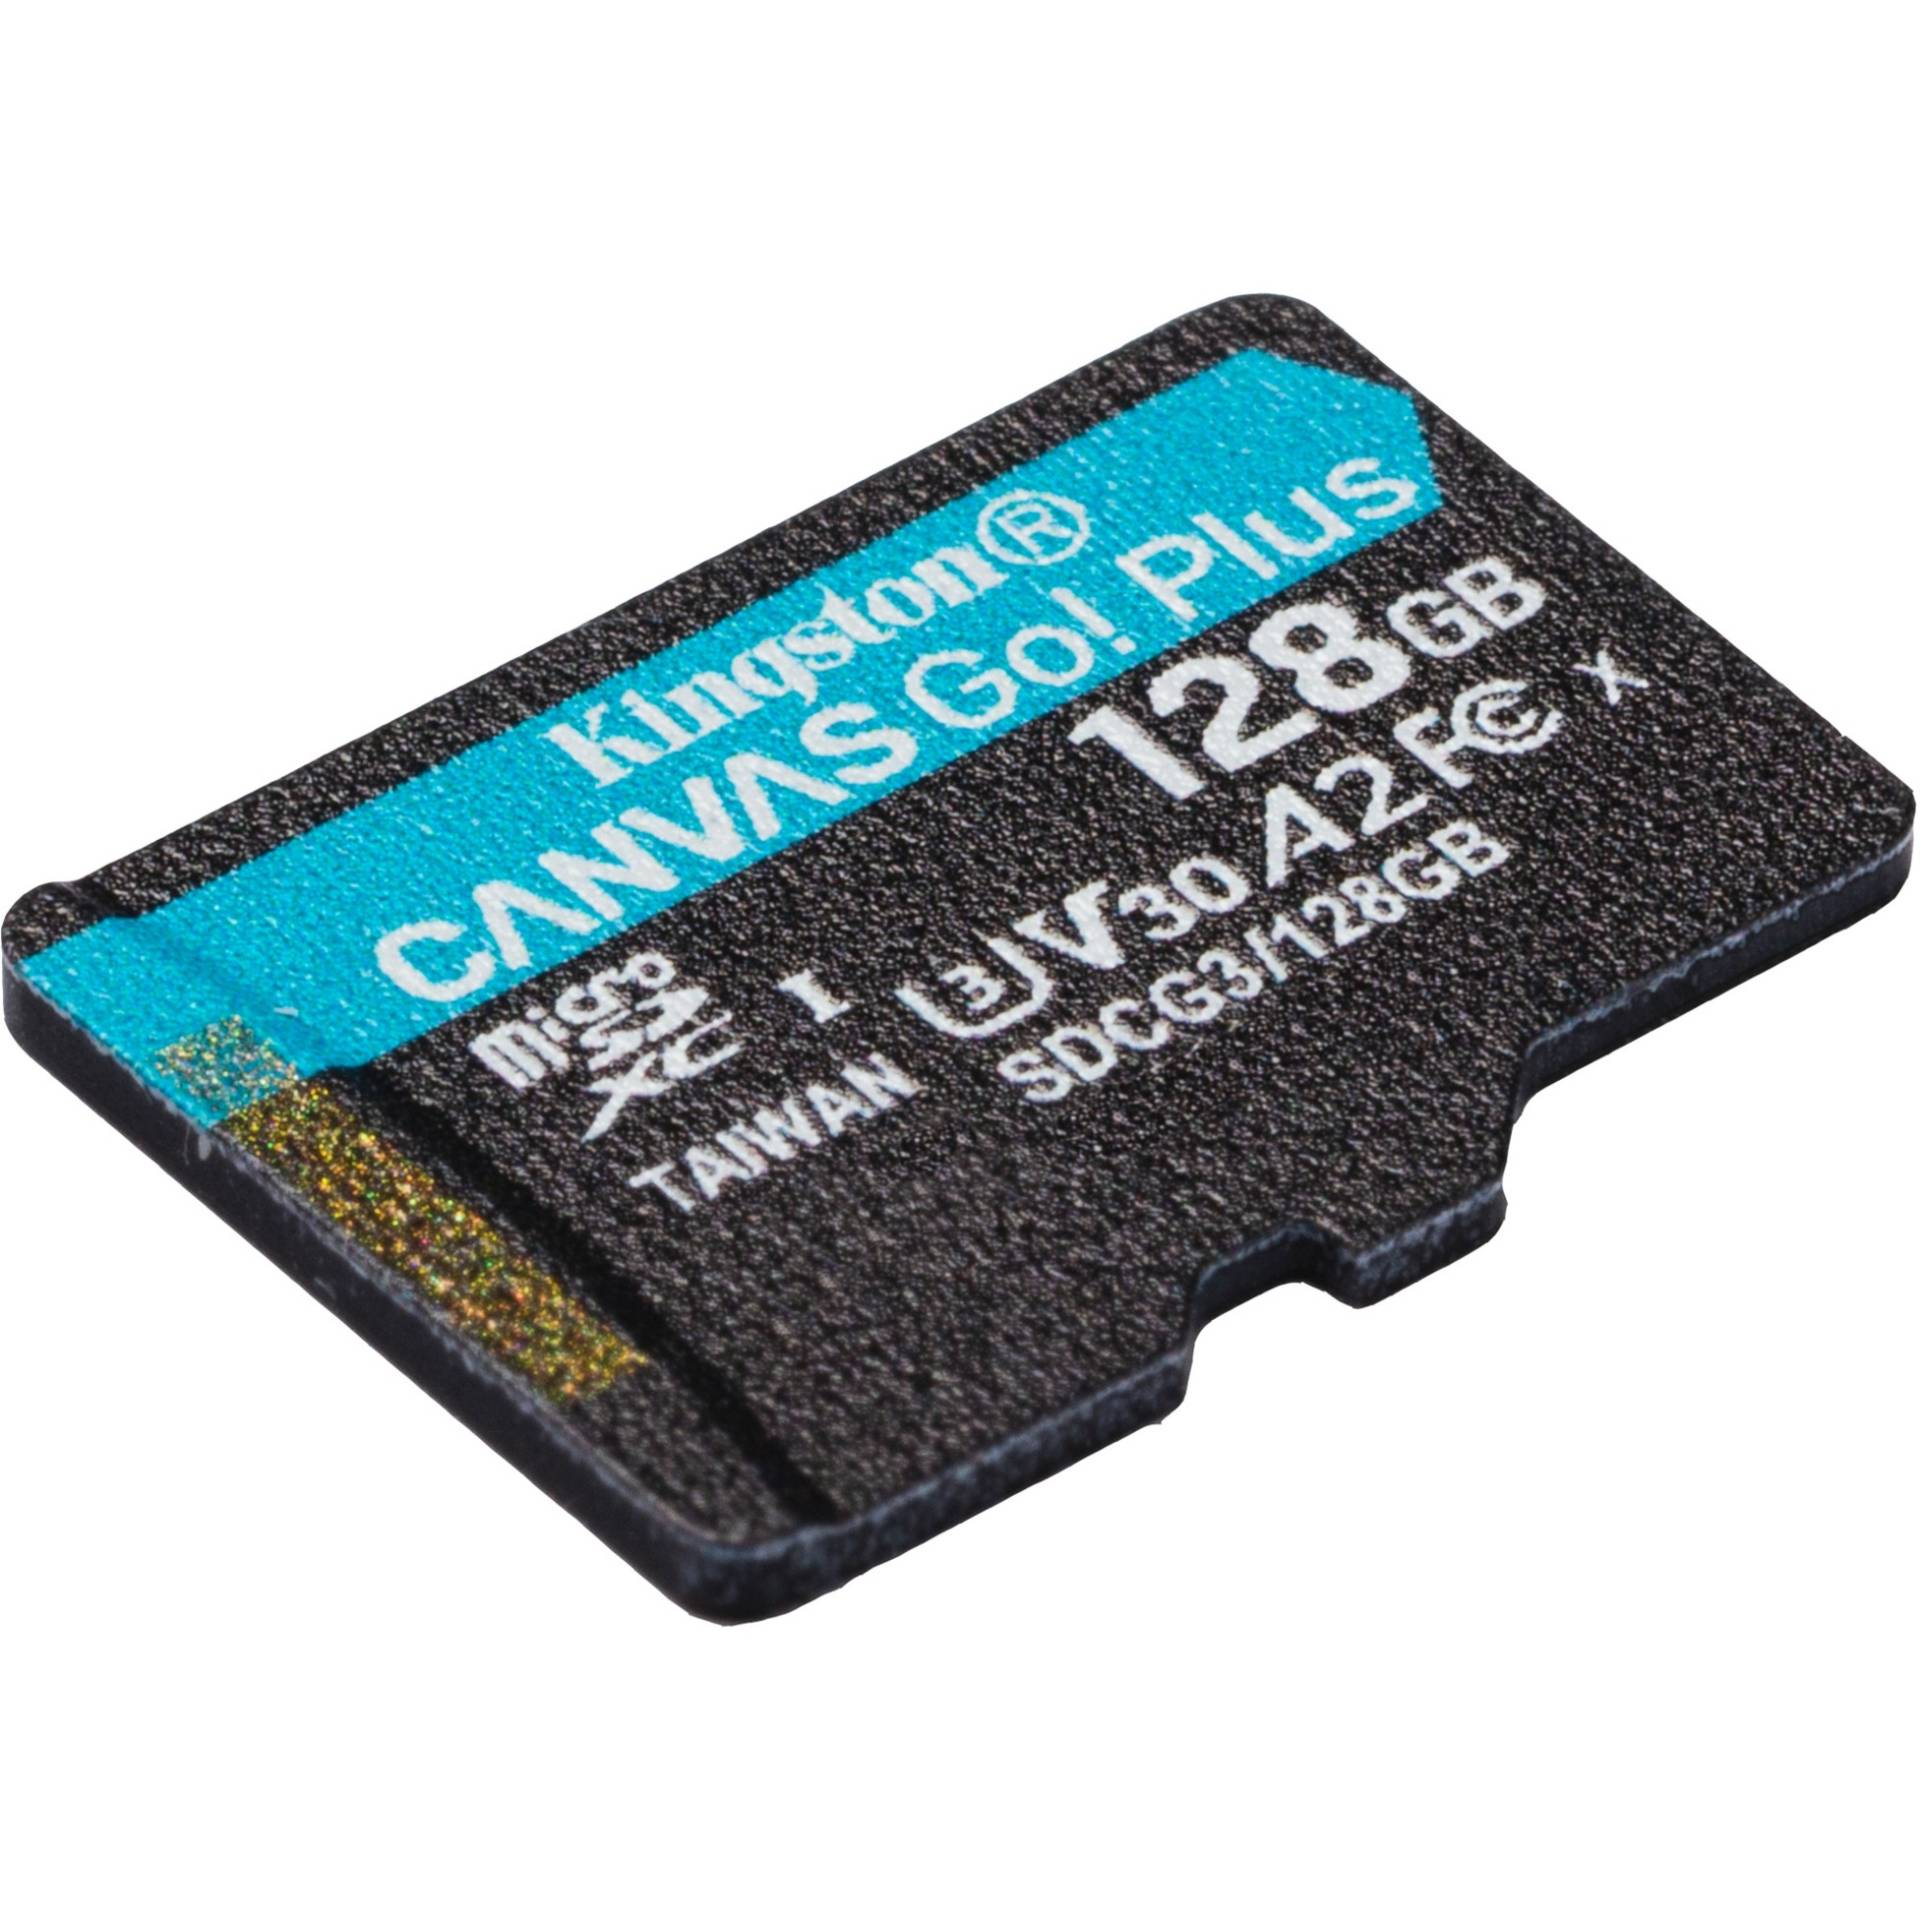 Canvas Go! Plus 128 GB microSDXC, Speicherkarte von Kingston